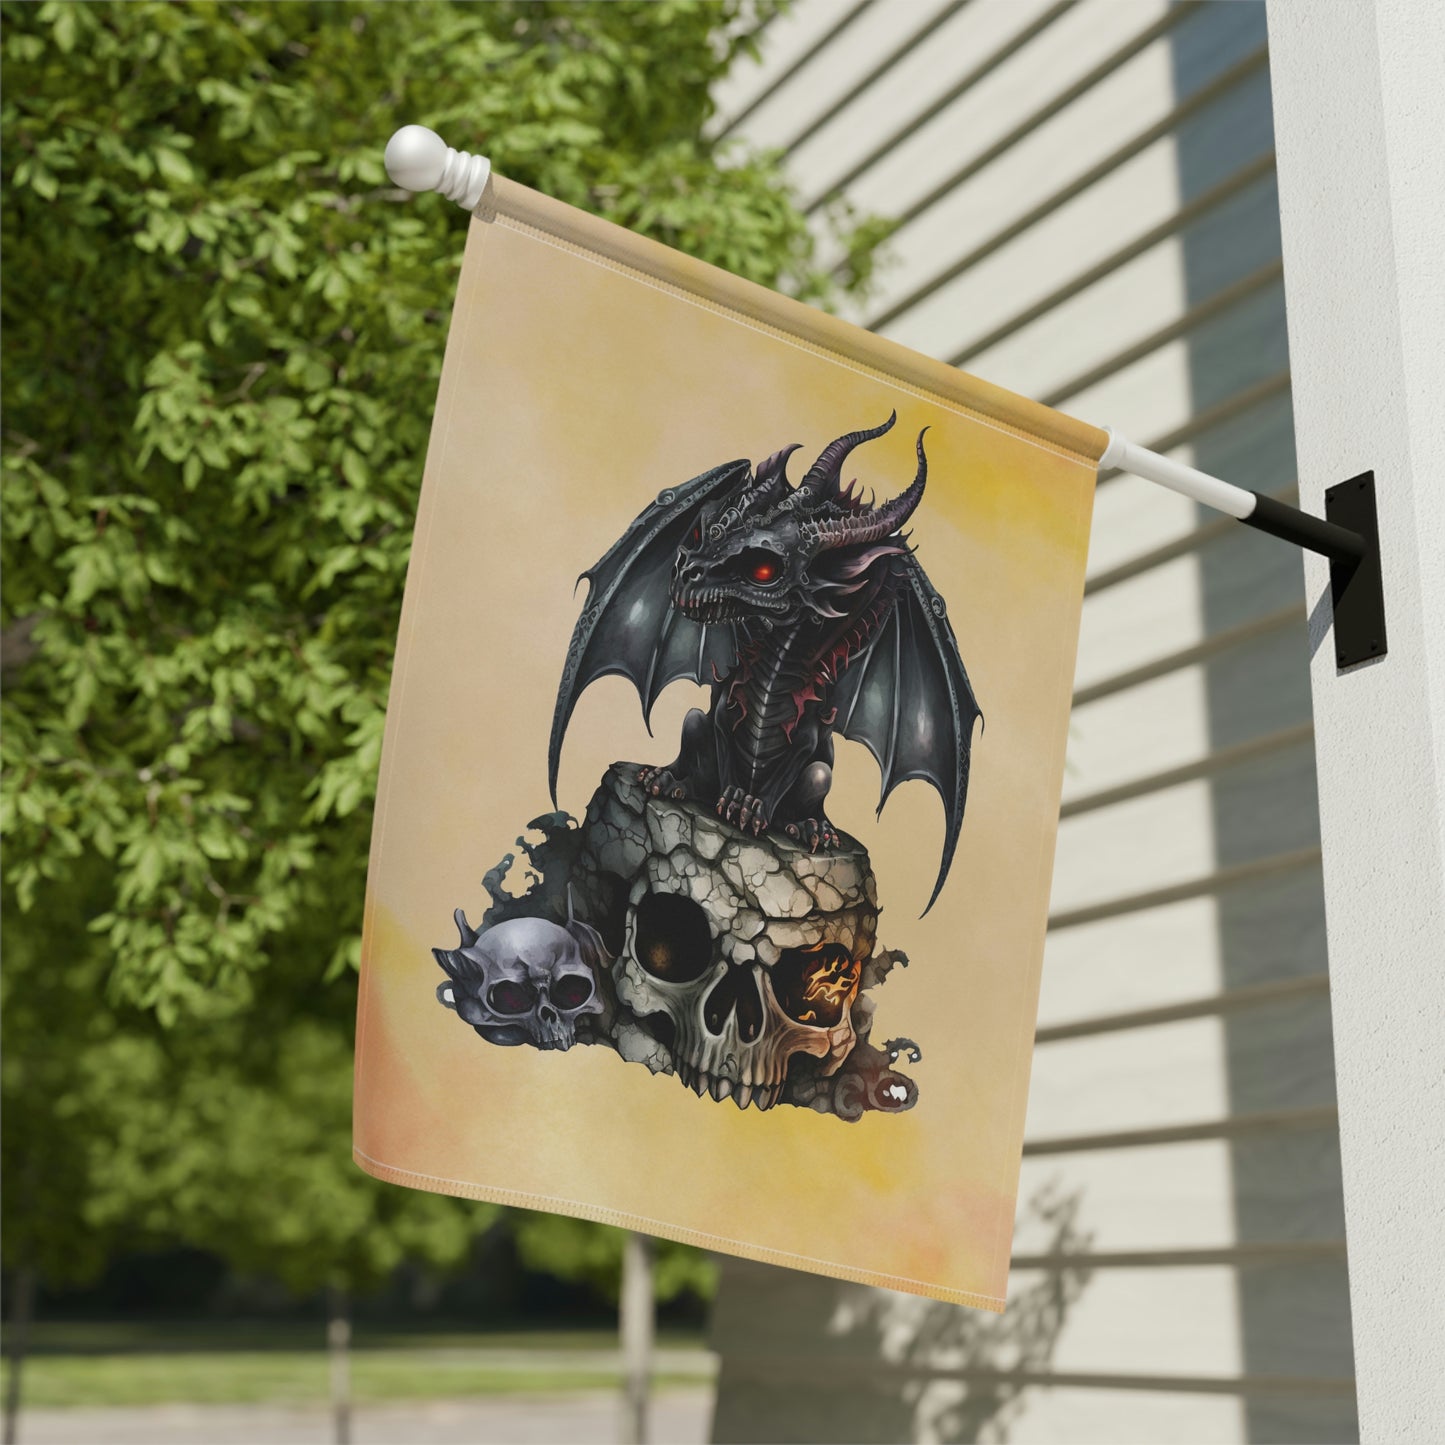 Dragon Garden & House Banner